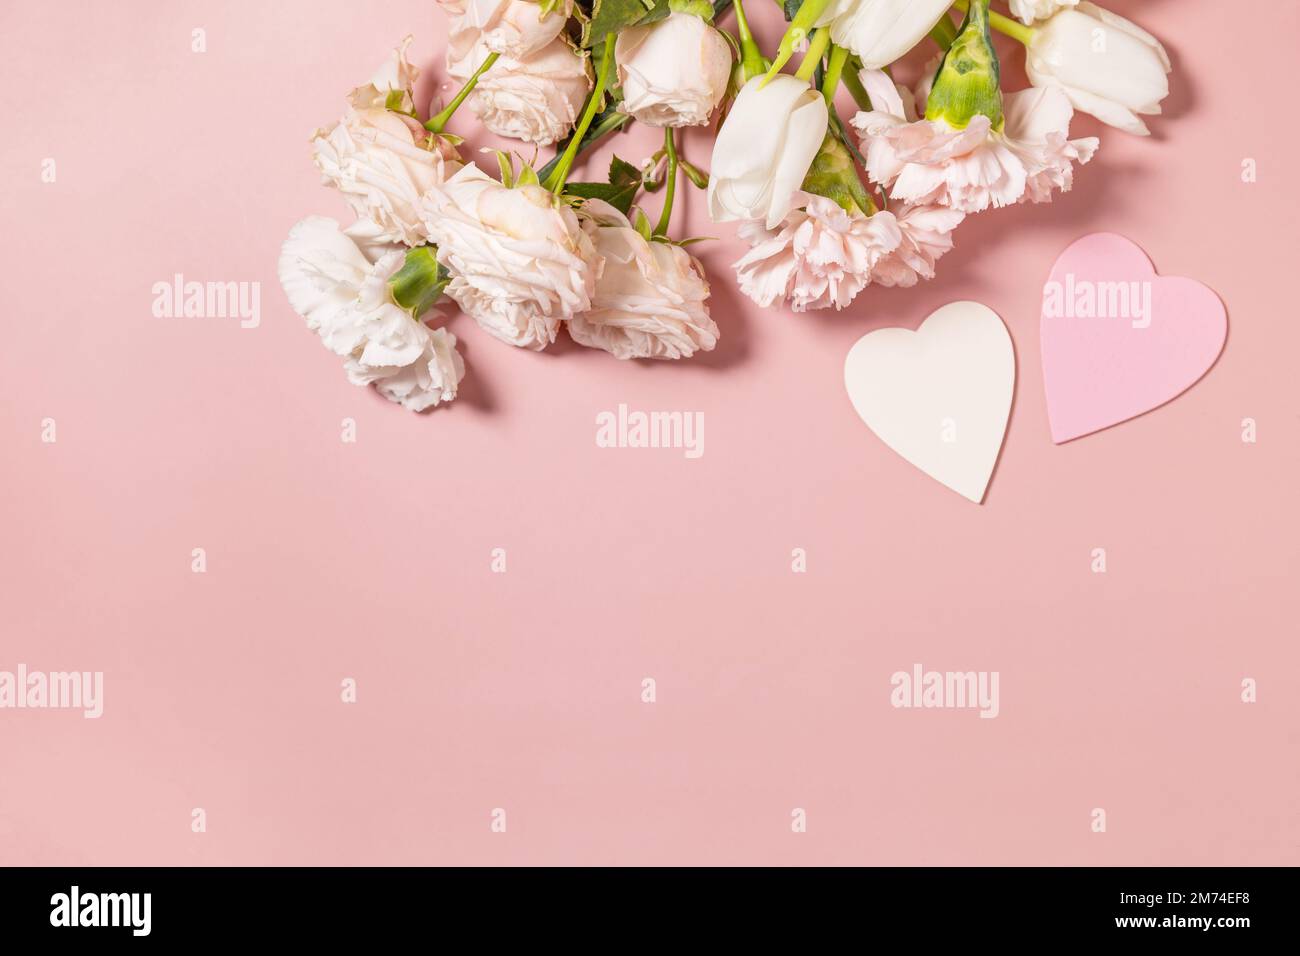 Valentinstag-Grußkarte mit wunderschönen Blumen auf pinkfarbenem Hintergrund. Valentinstag, Frauentag, Hochzeit, Geburtstag oder Muttertag. Blick von oben Stockfoto